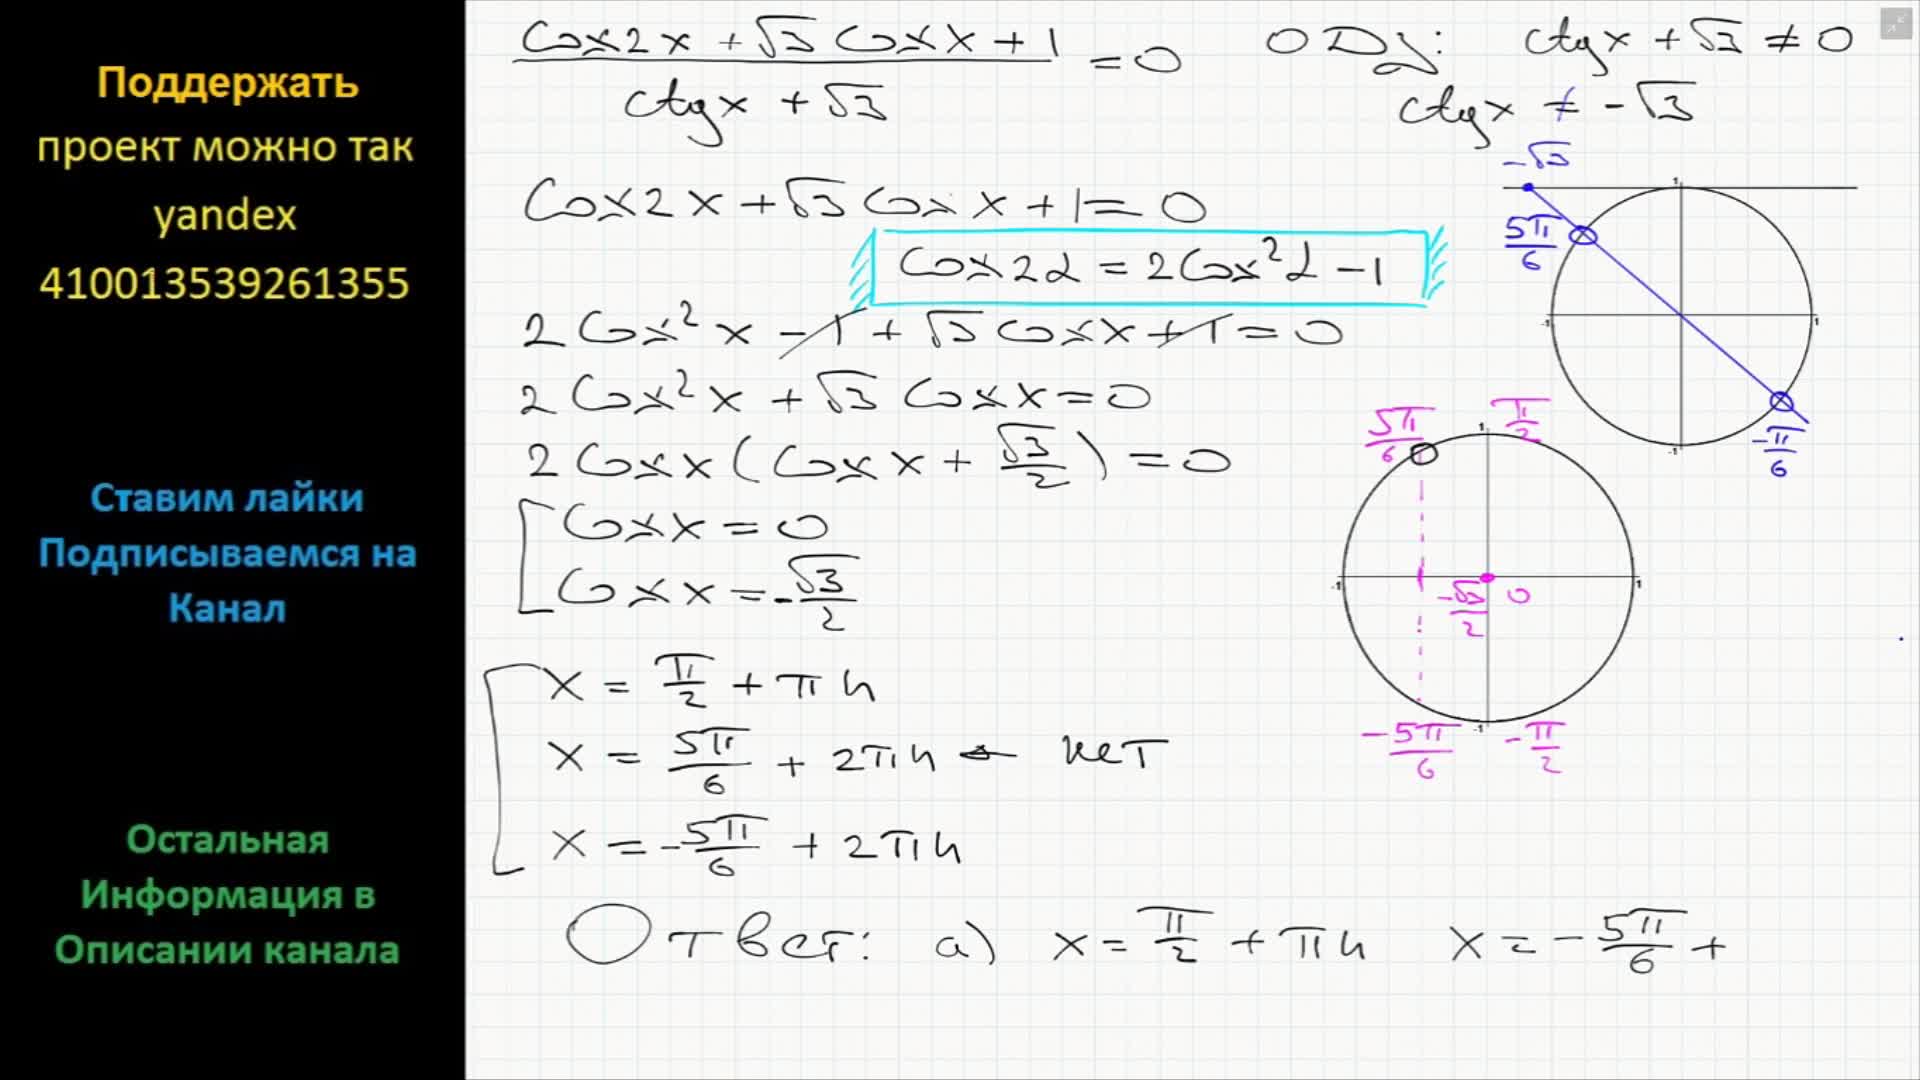 Решите уравнение 2cos x корень 3 0. Cosx 1 2 решение уравнения. CTG X корень из 3 /3 решение. CTG X < корень 2/2. Решение уравнения cos x + x^2.